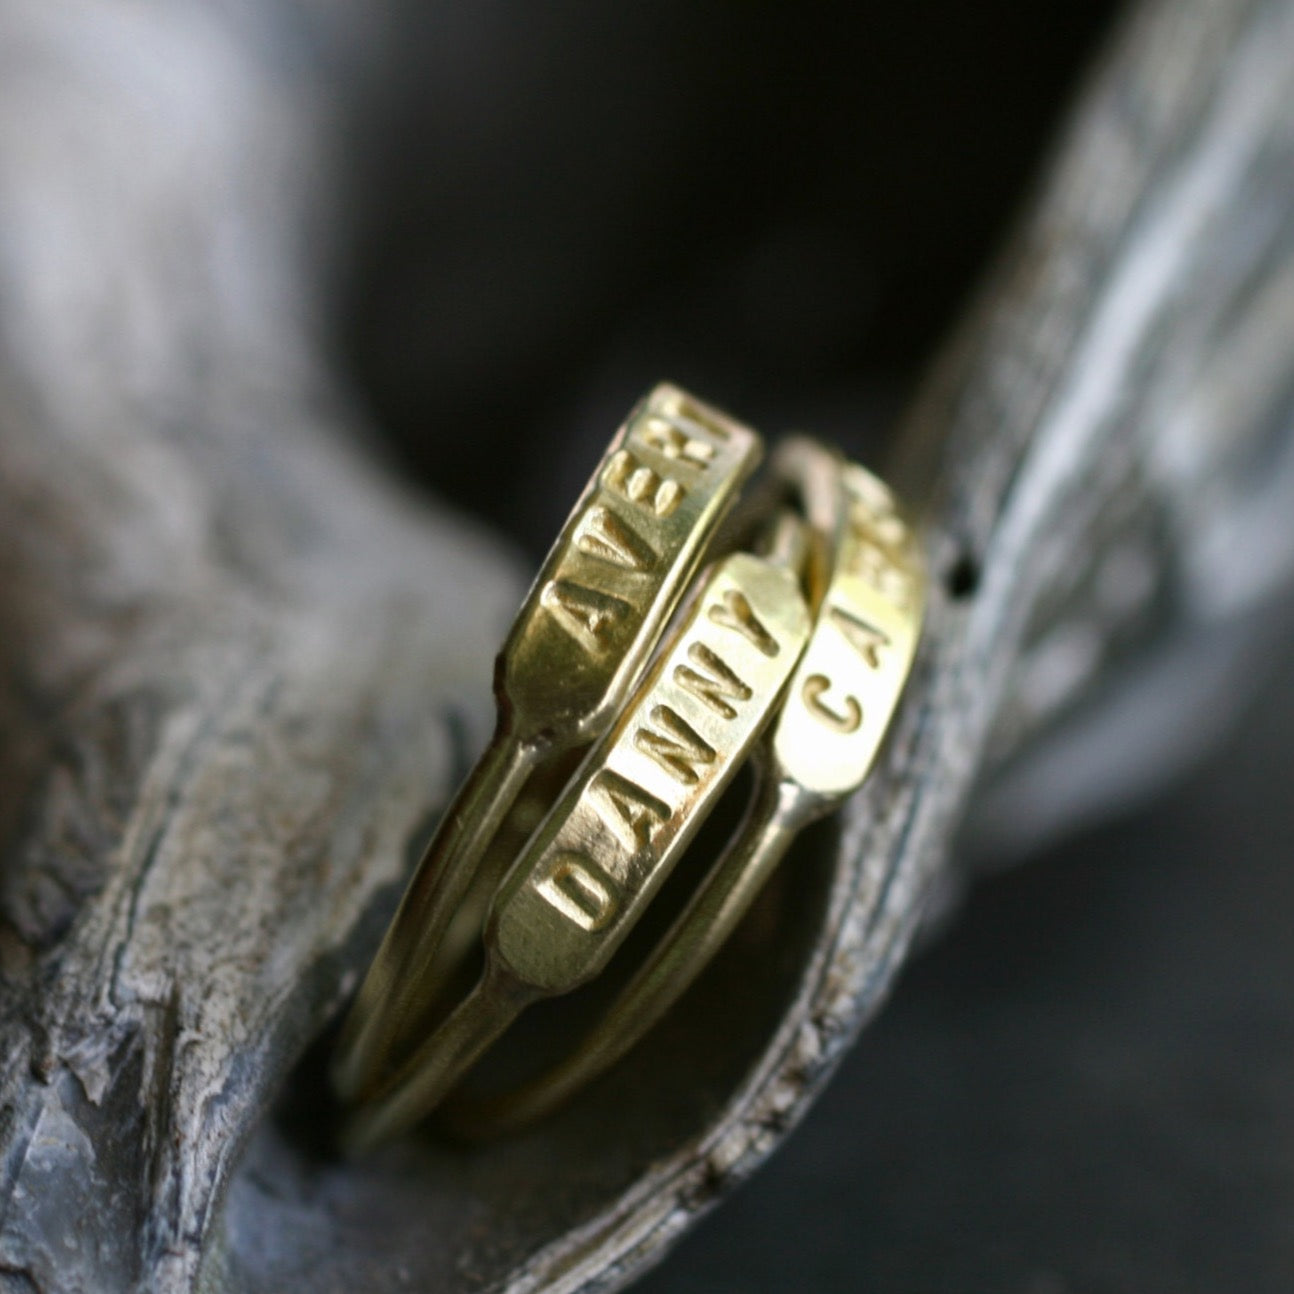 Buy/Send Personalised Name Engraved Minimal Ring Online- FNP